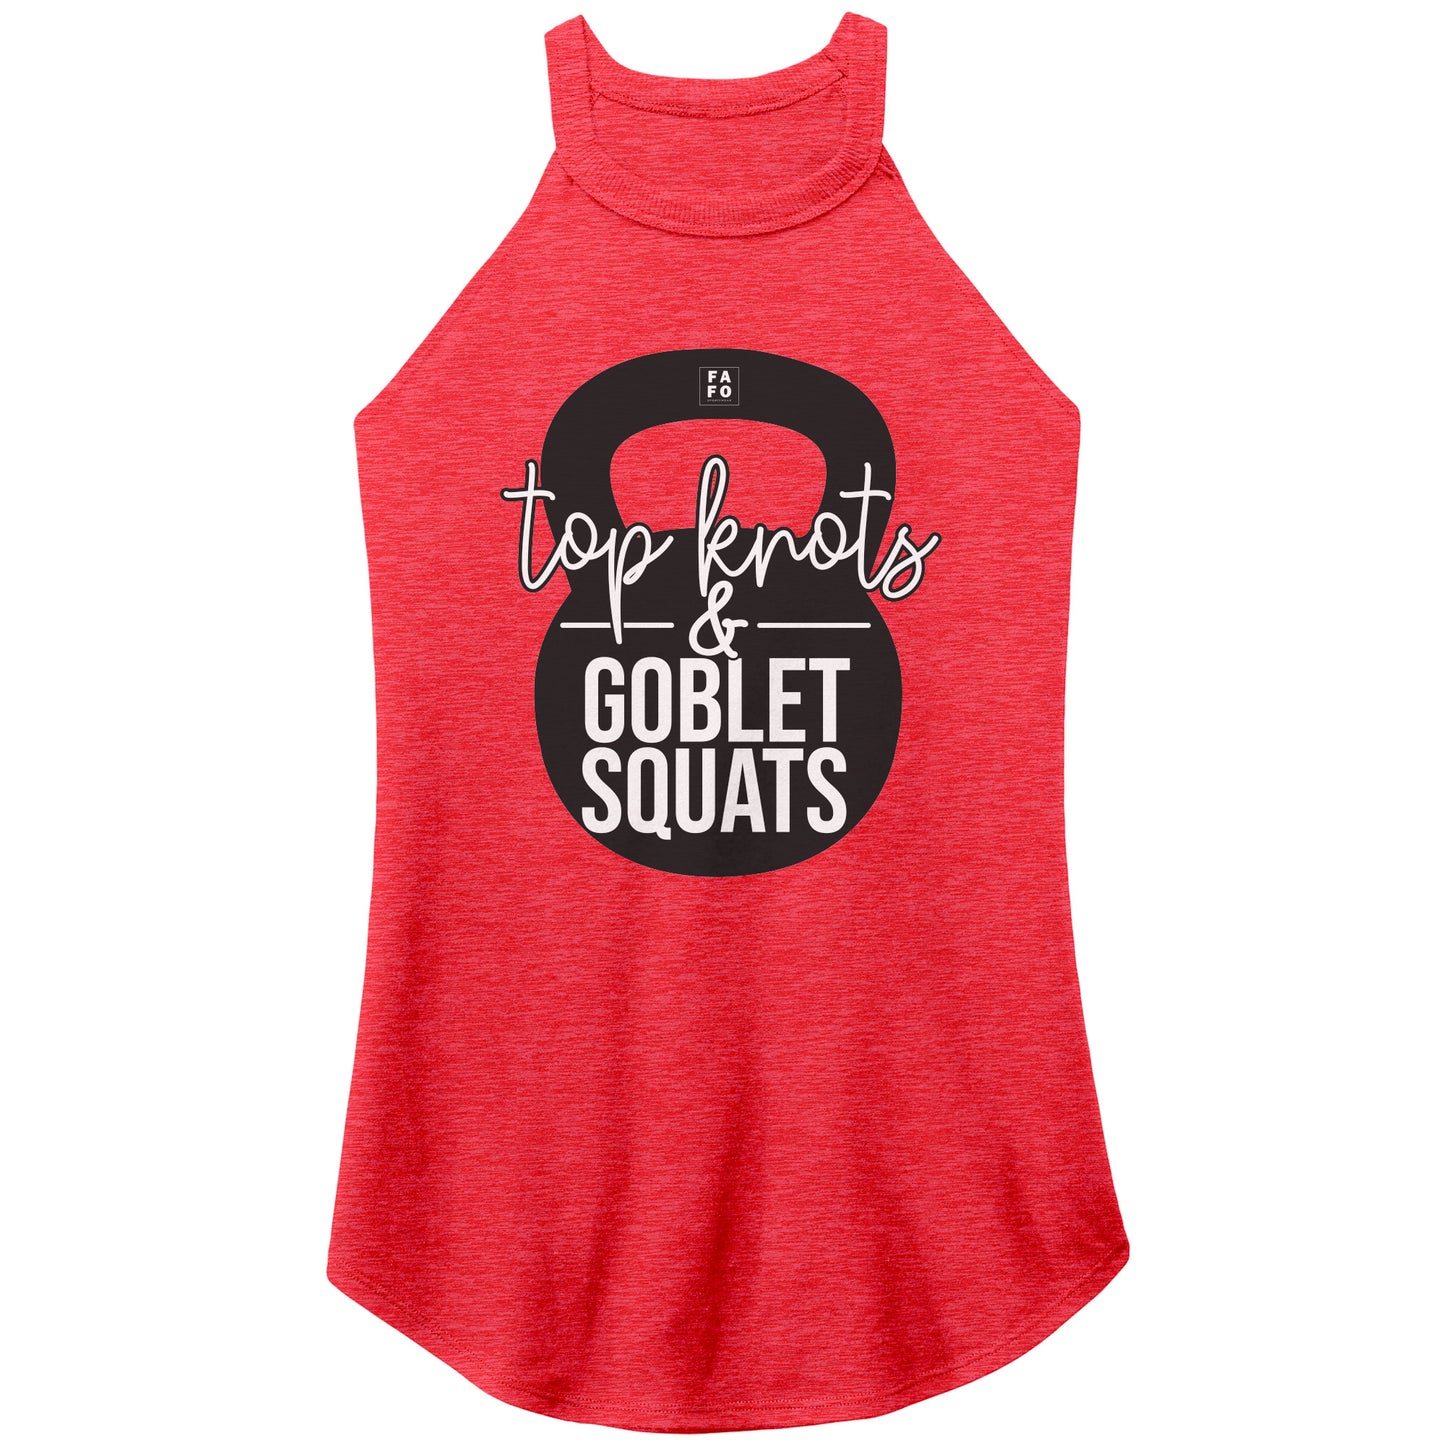 Rocker Tank - Goblet Squats - Red